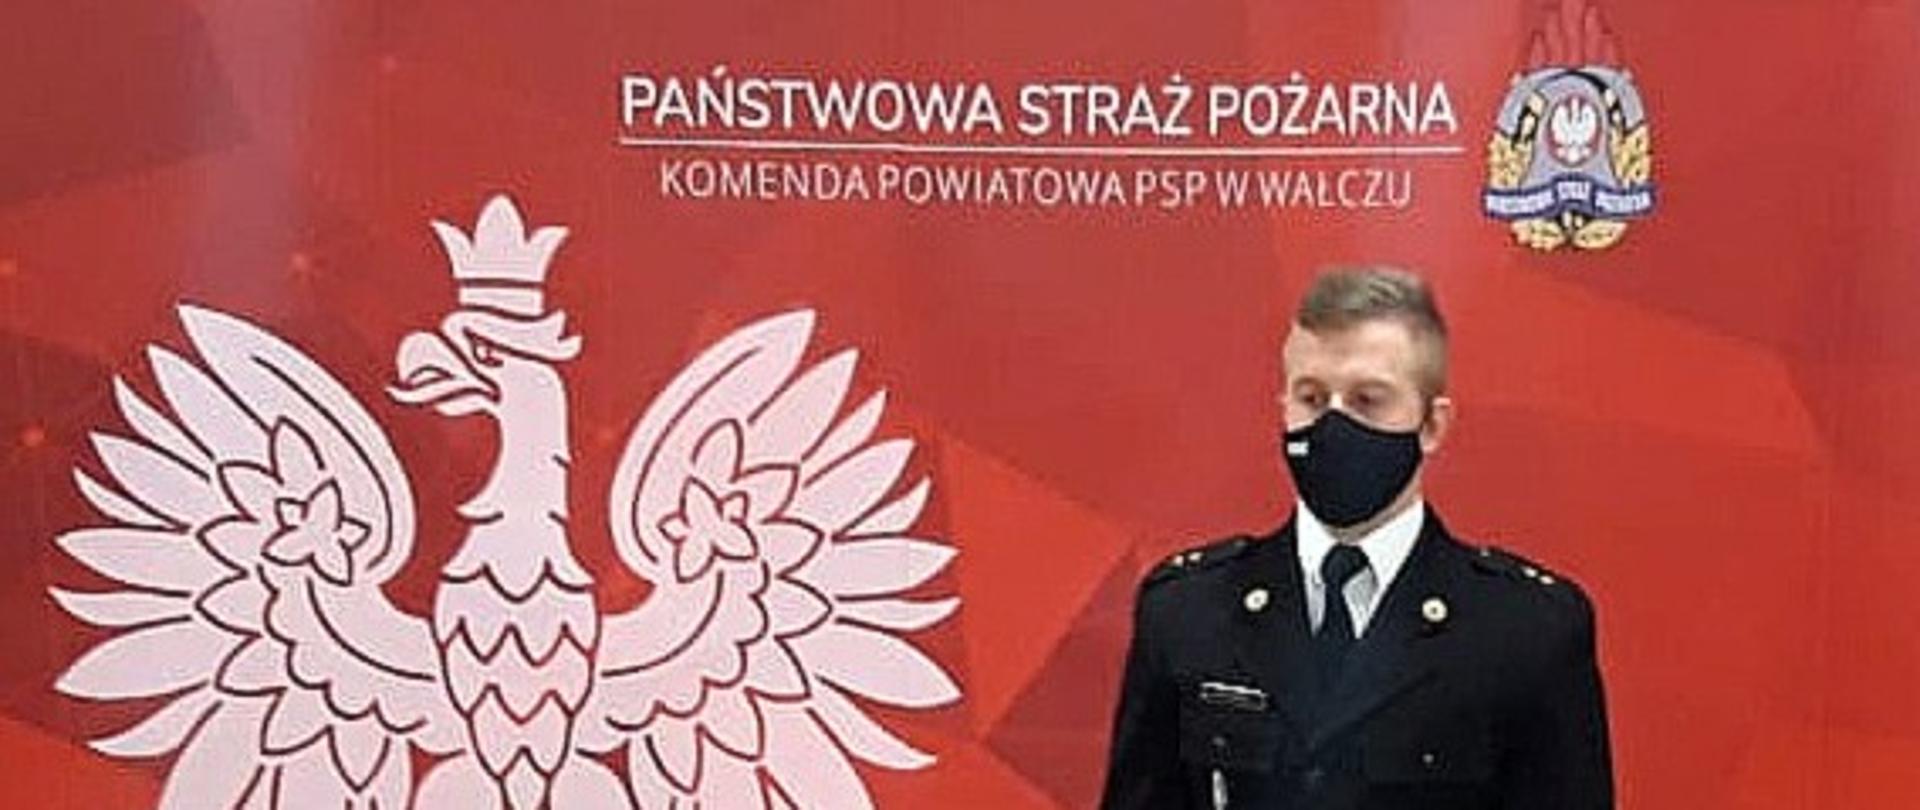 Zdjęcie przedstawia funkcjonariusza PSP na czerwony tle z białym orłem w koronie i logo PSP